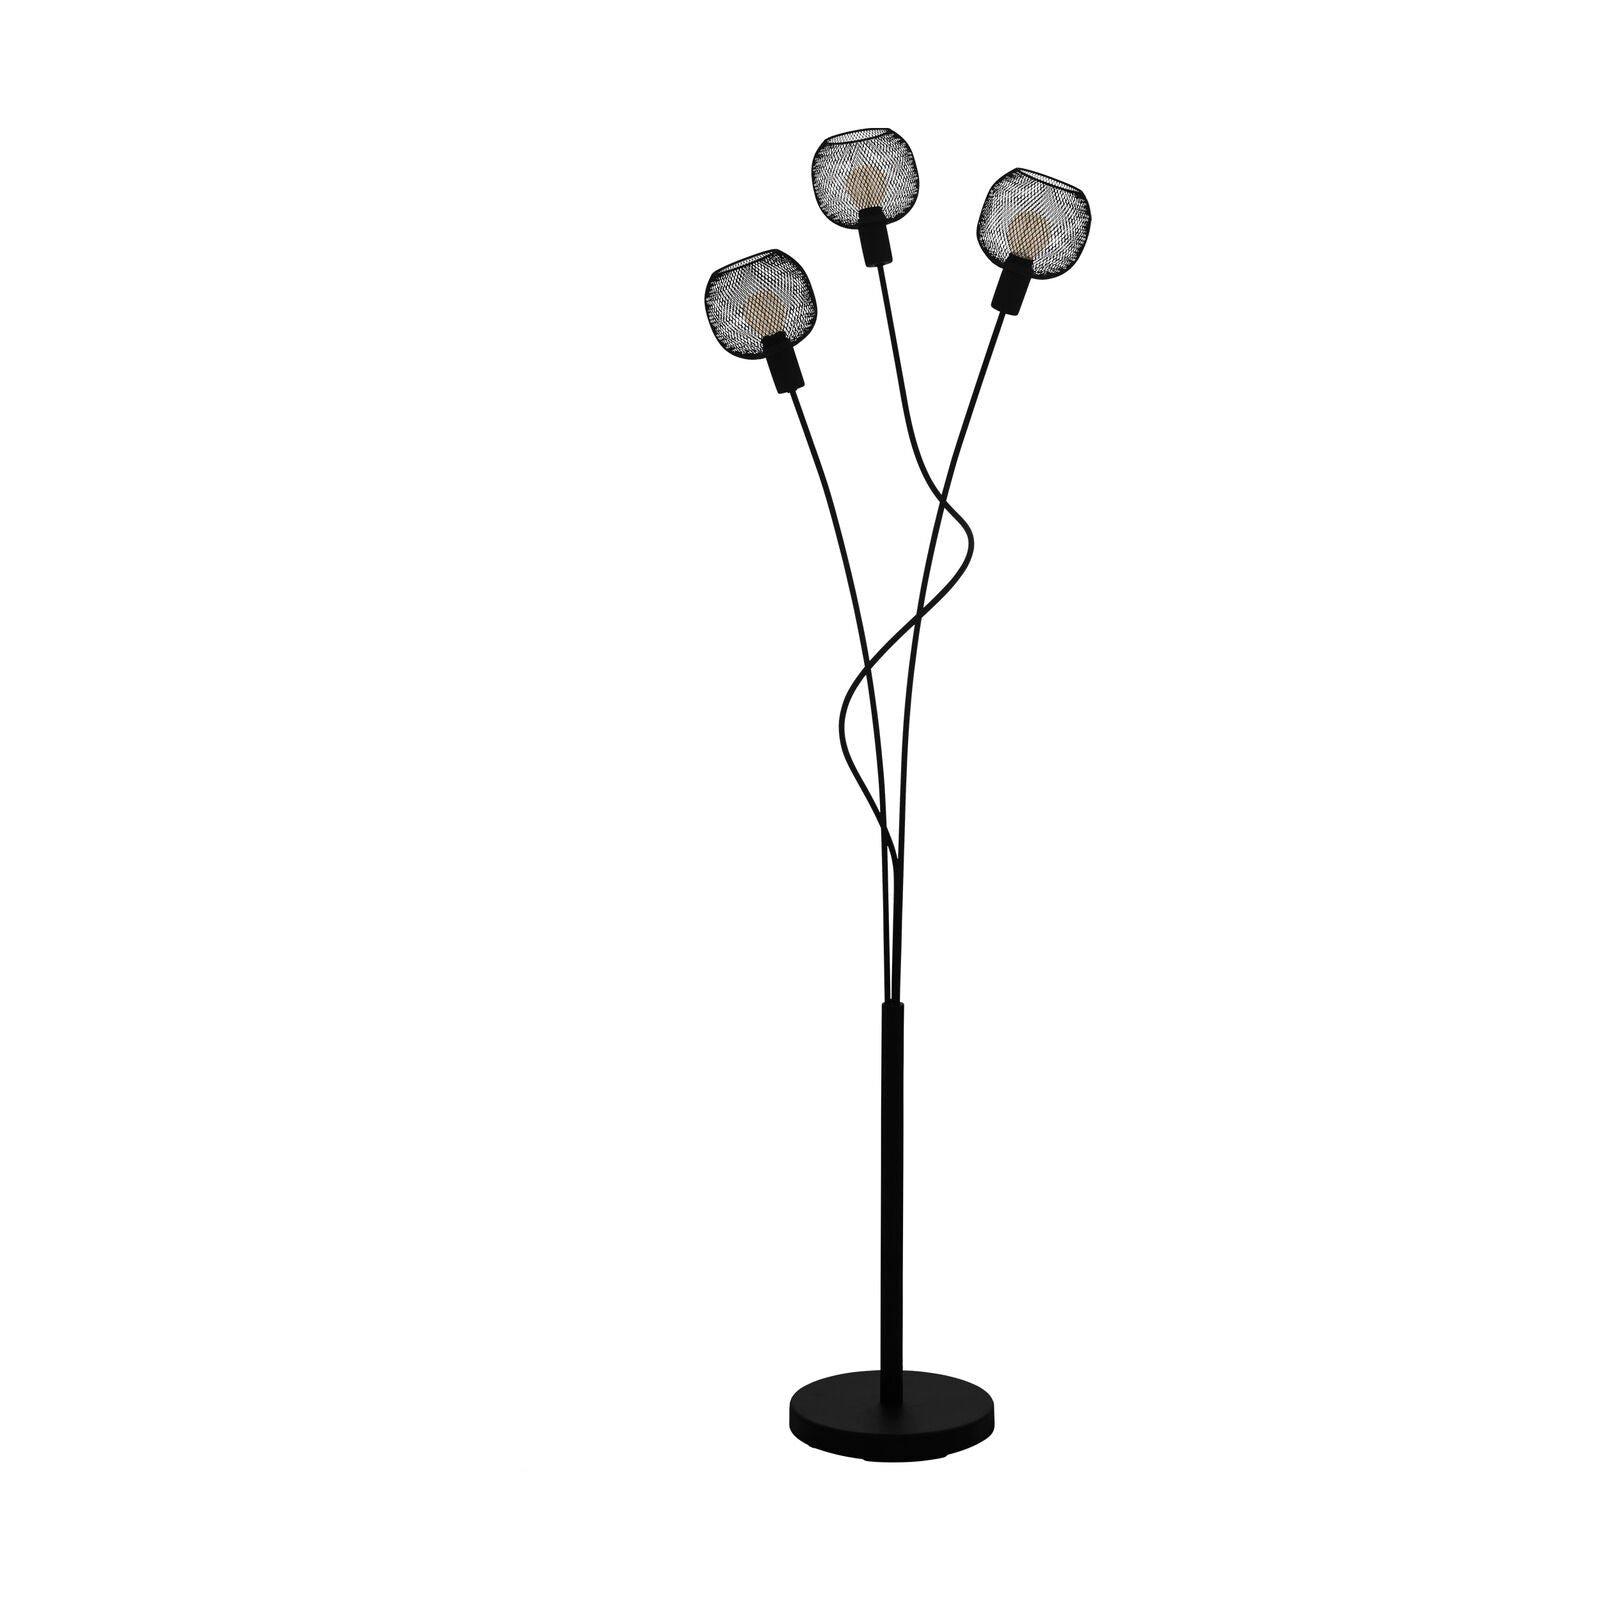 Standing Floor Lamp Light Black Mesh Shade 3 Arm 40W E14 Bulb Living Room